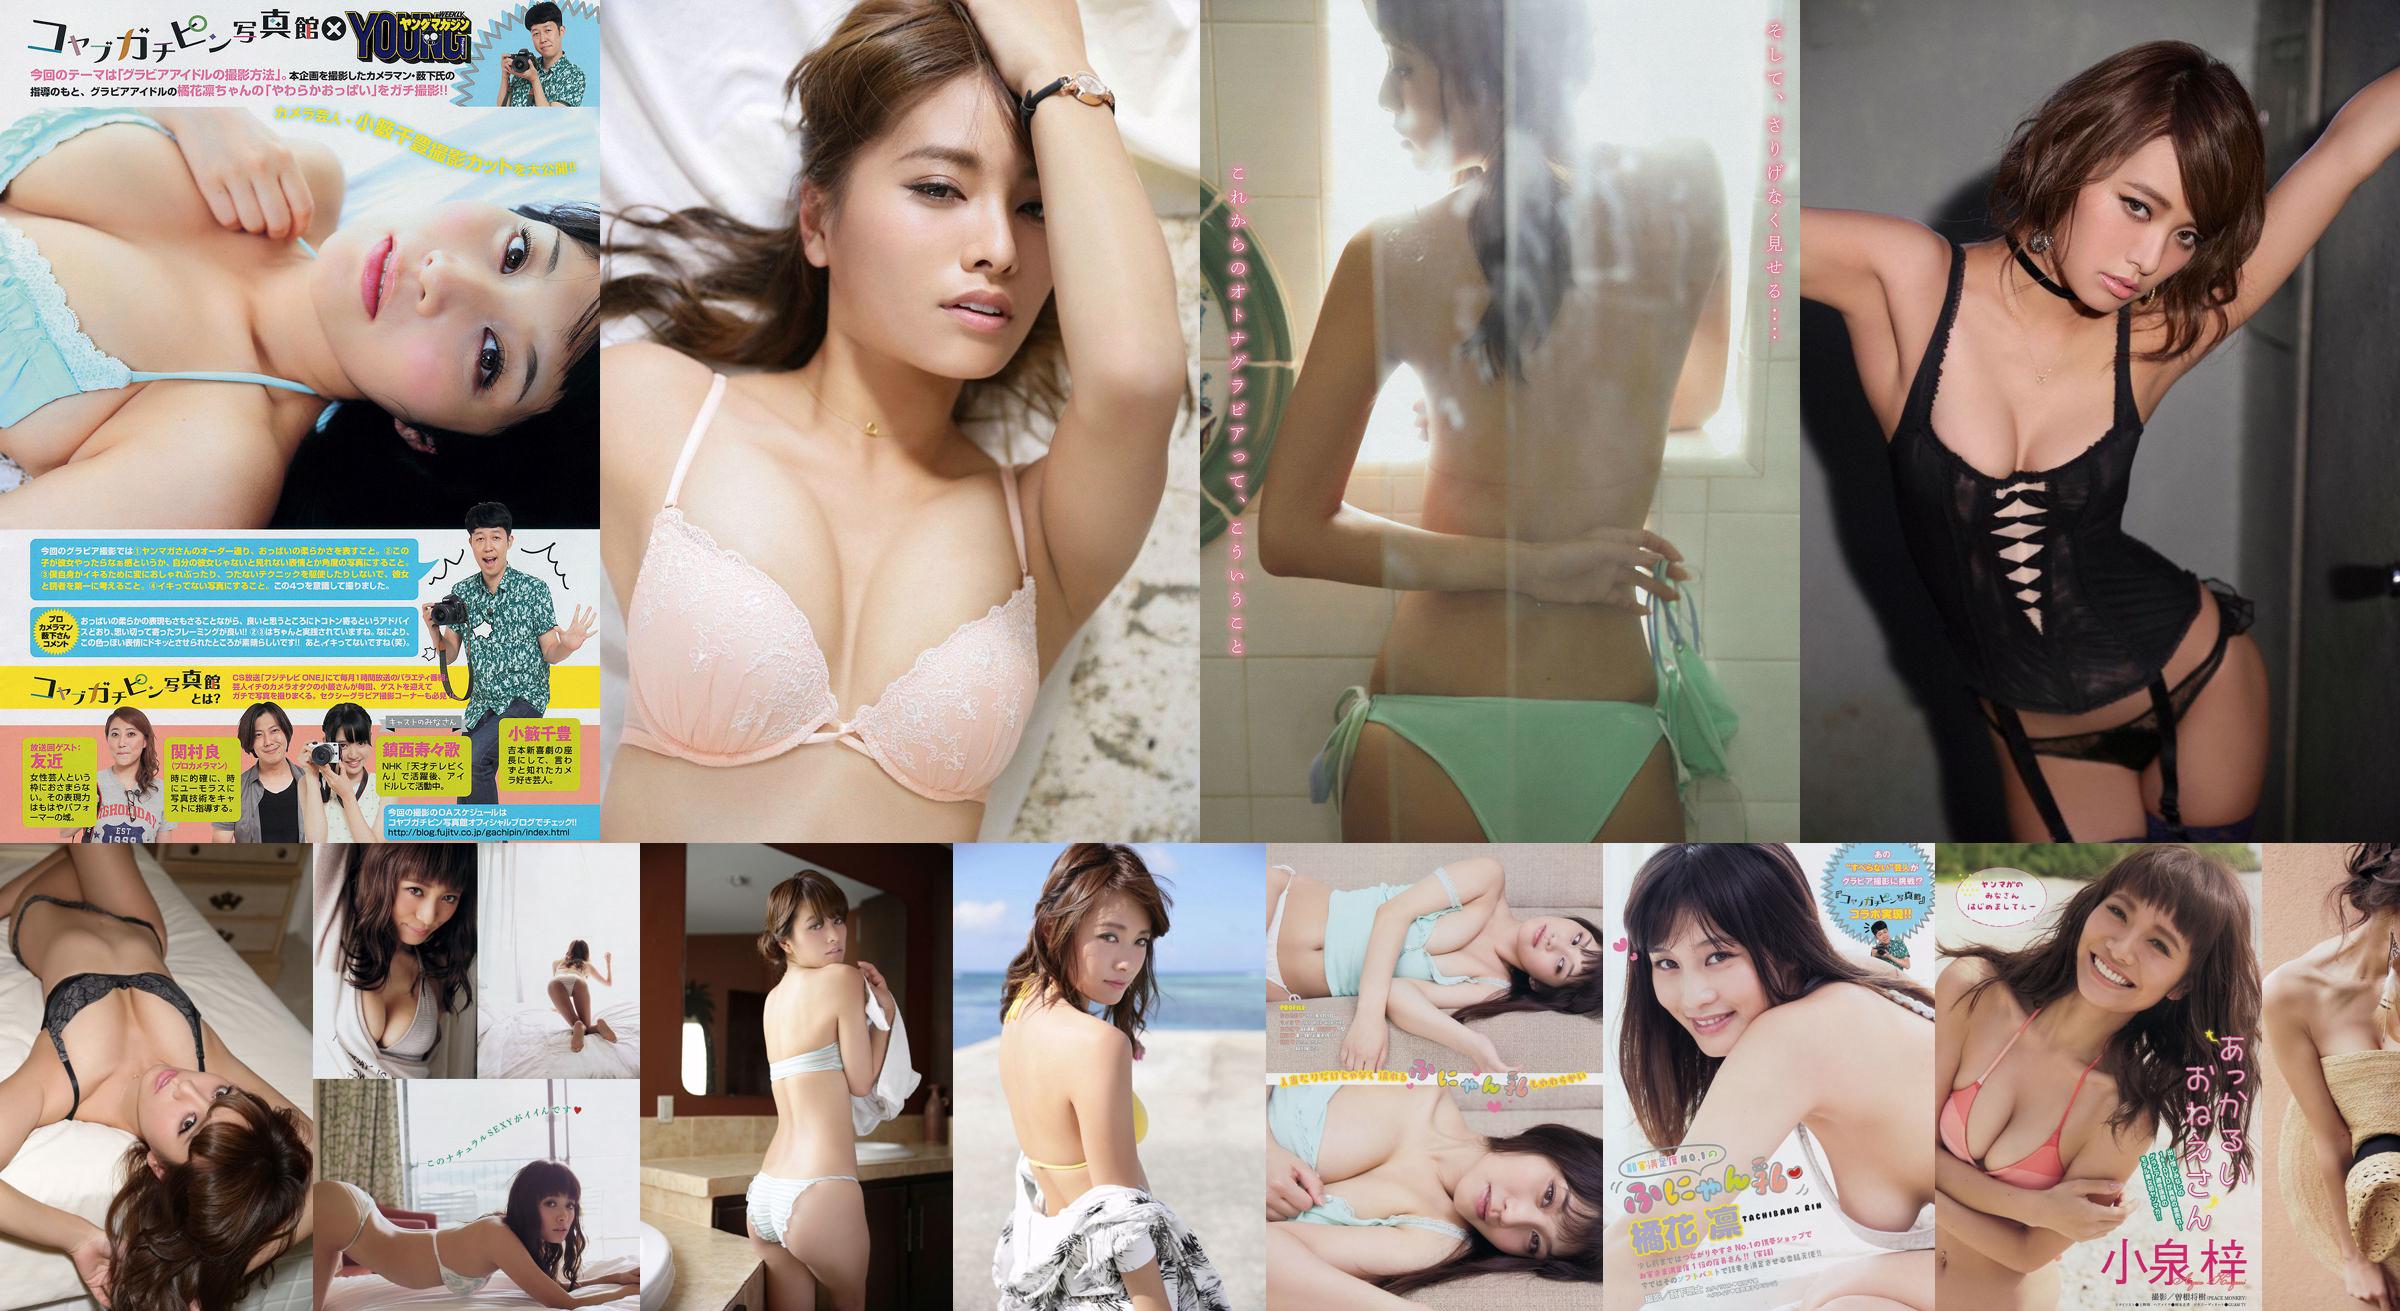 [Young Magazine] Azusa Koizumi Tachibana Rin 2014 No.43 Photo Magazine No.bd2e4f Page 1